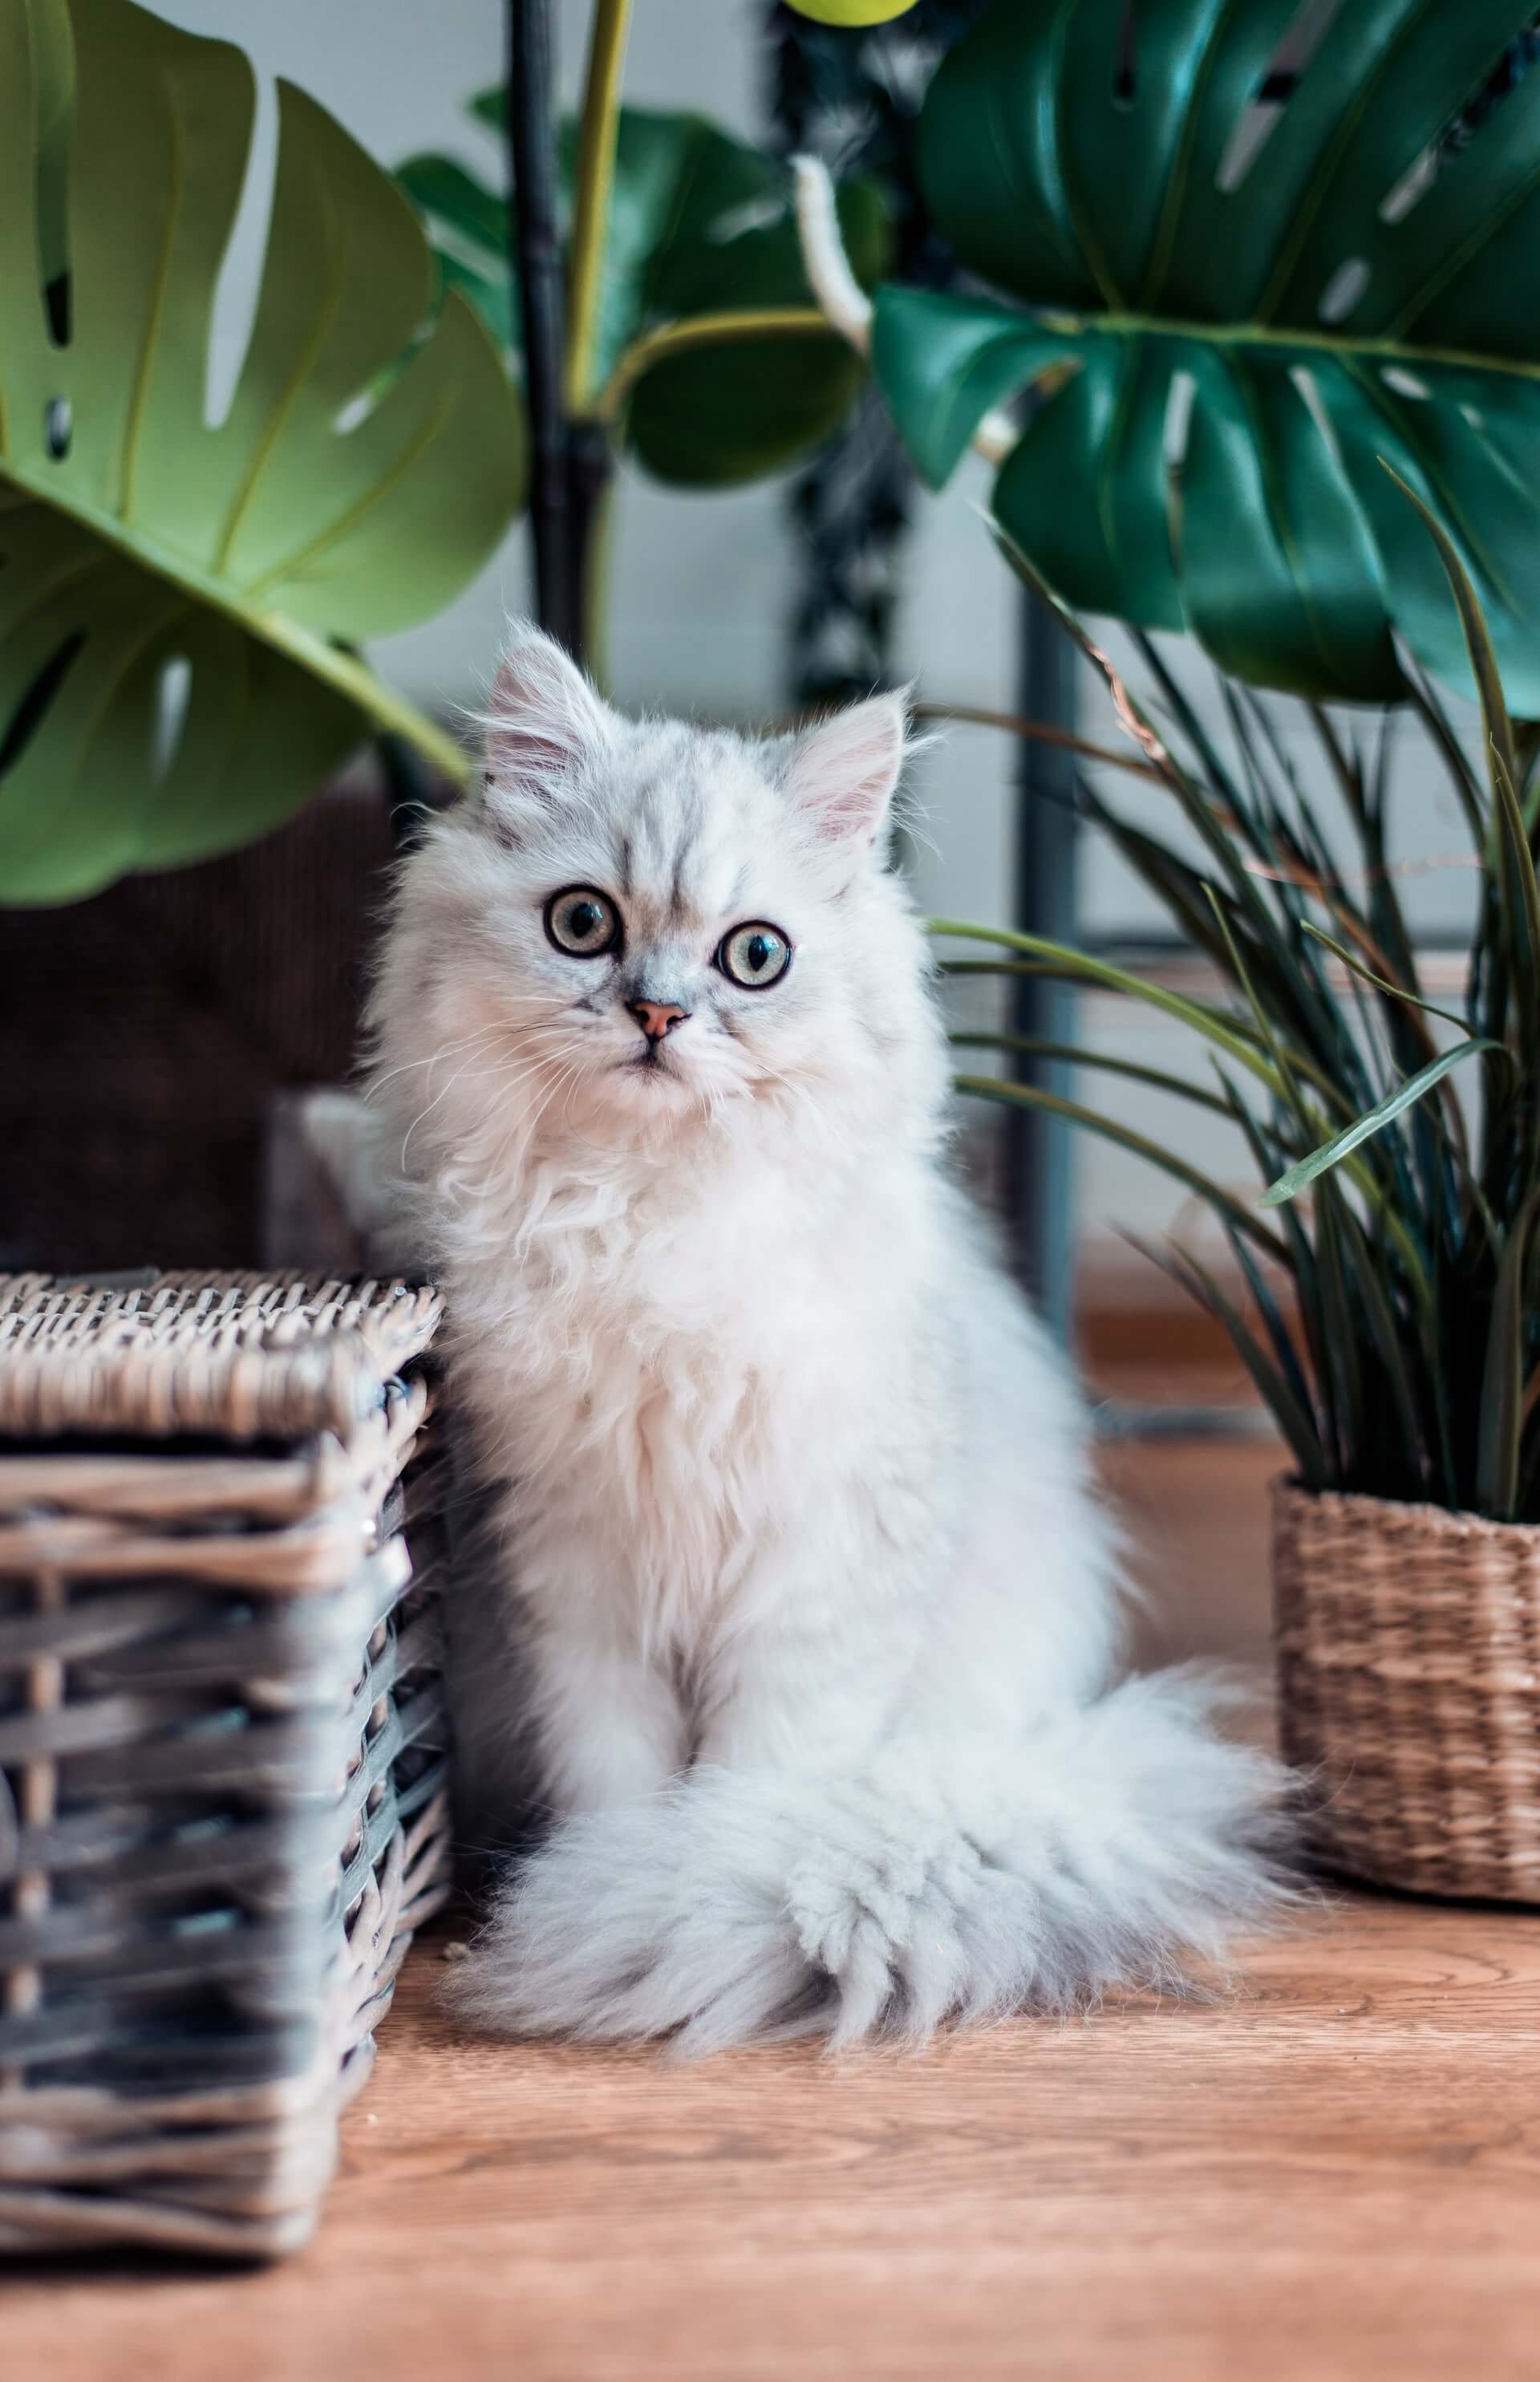 Convivenza pacifica tra piante e gatti di casa - Cose di Casa